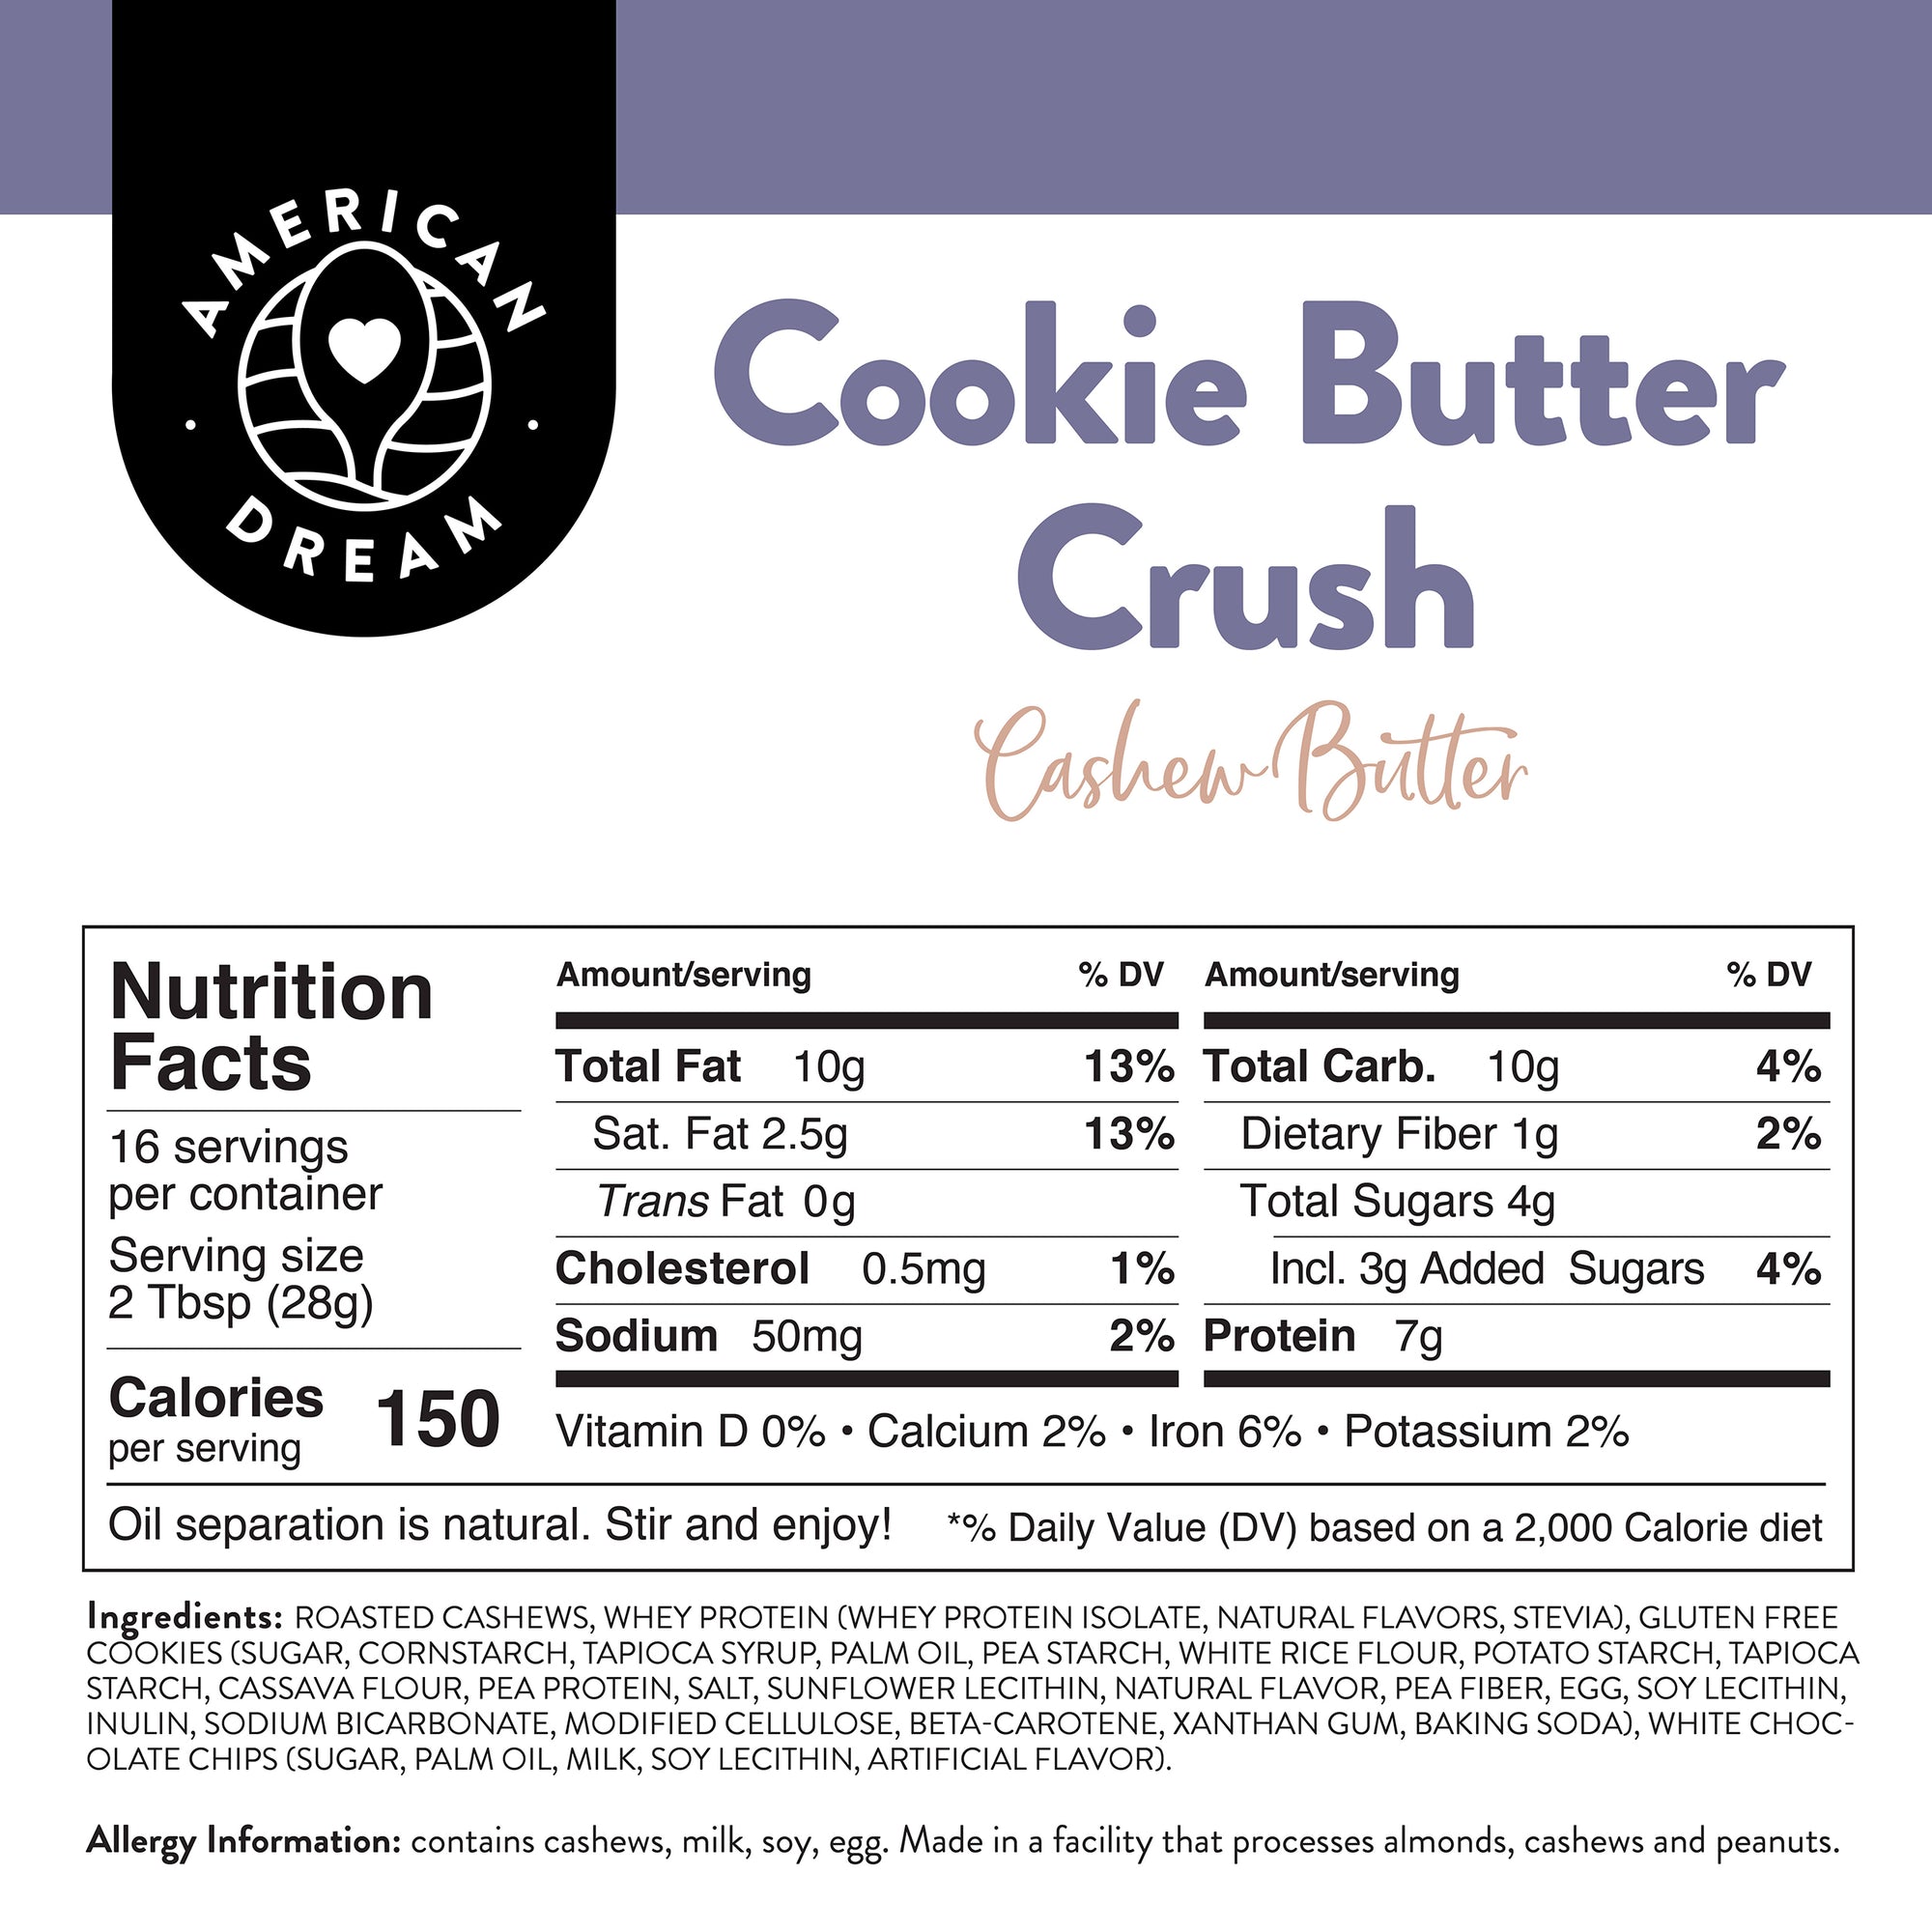 Gluten-Free Cookie Butter Crush Cashew Butter